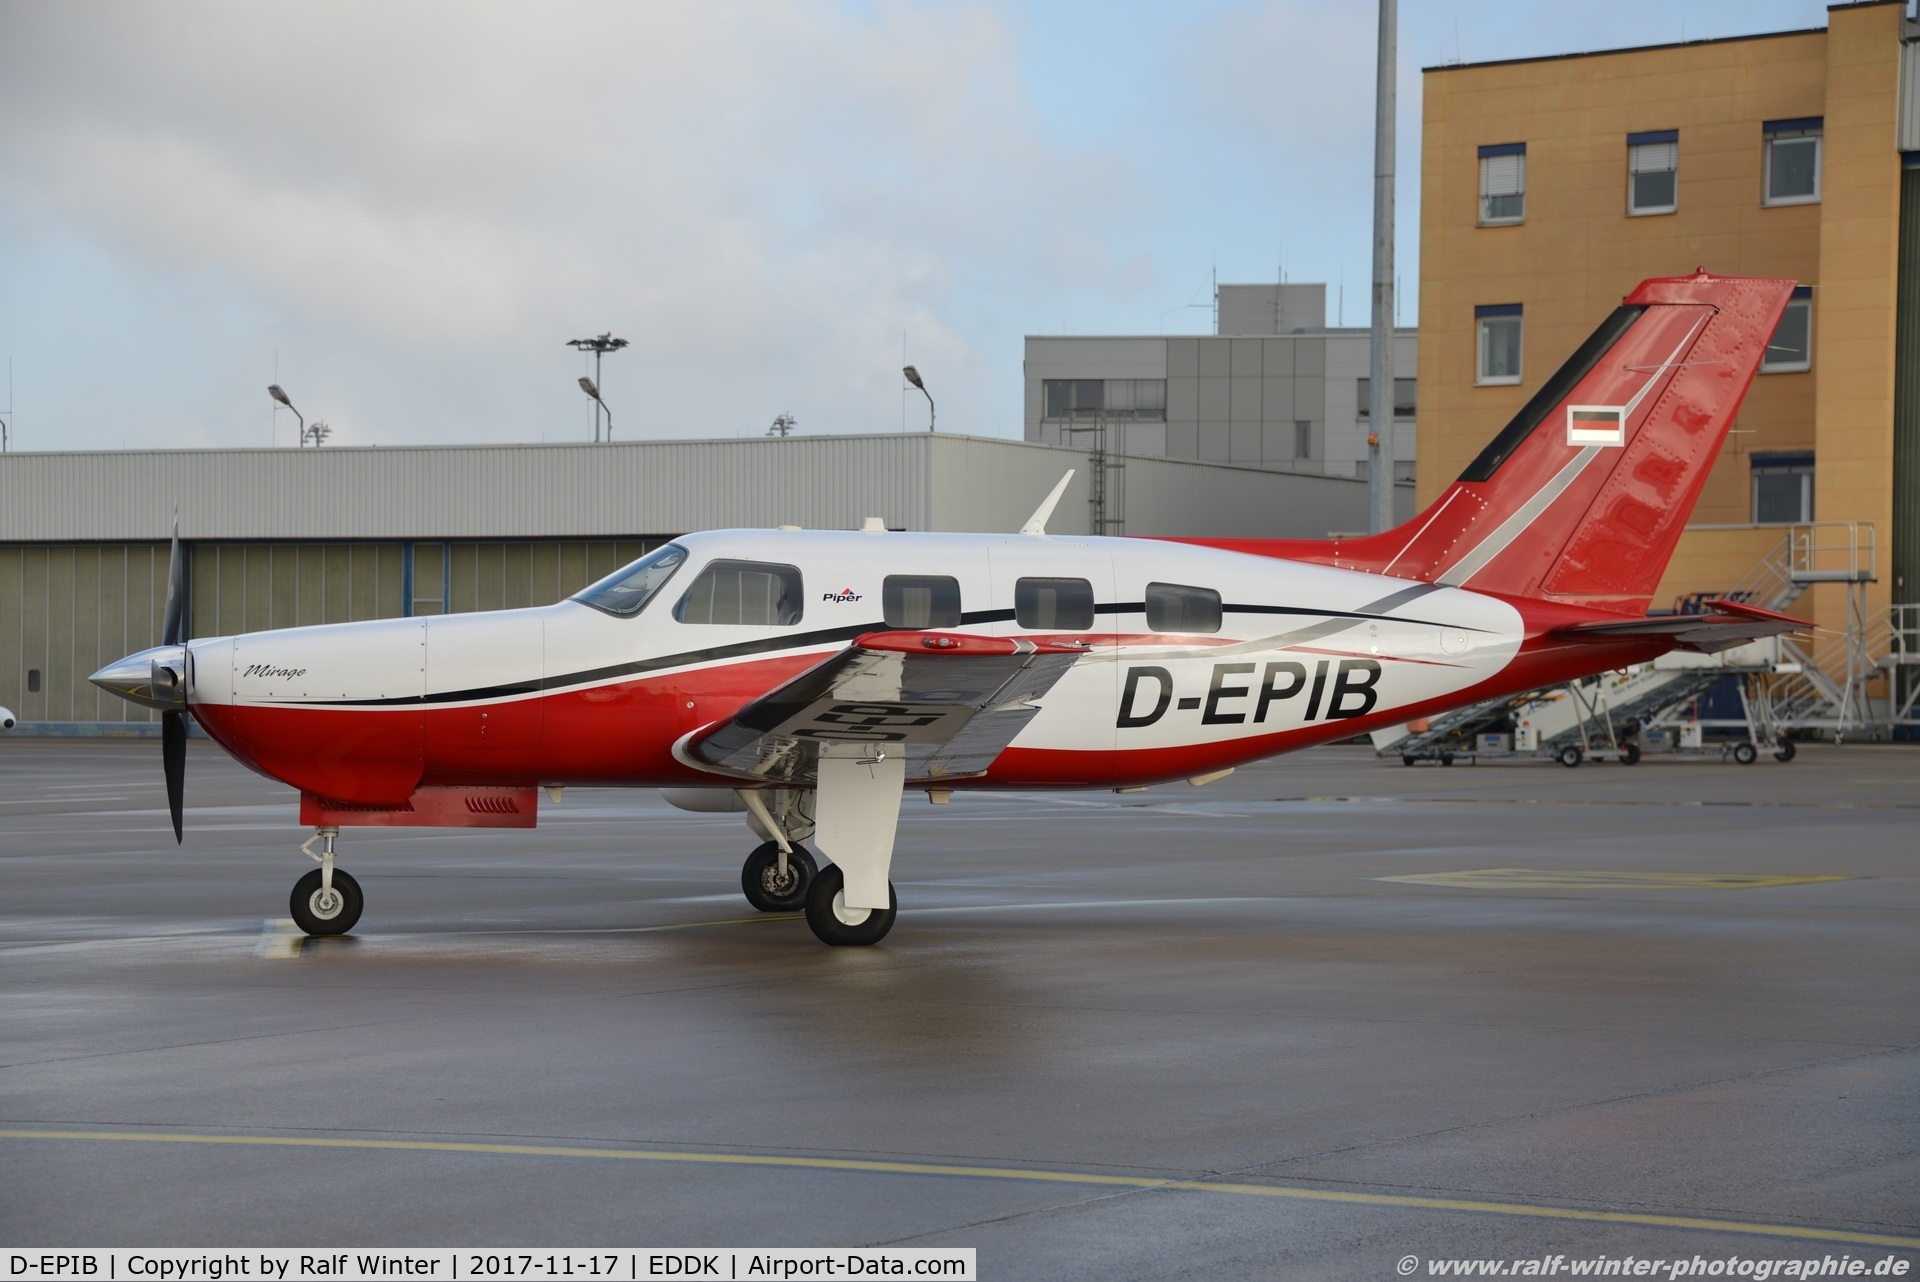 D-EPIB, Piper PA-46-350P Malibu Mirage C/N 4636564, Piper PA-46-350P Malibu - Private - 4636564 - D-EPIB -  17.11.2017 - CGN